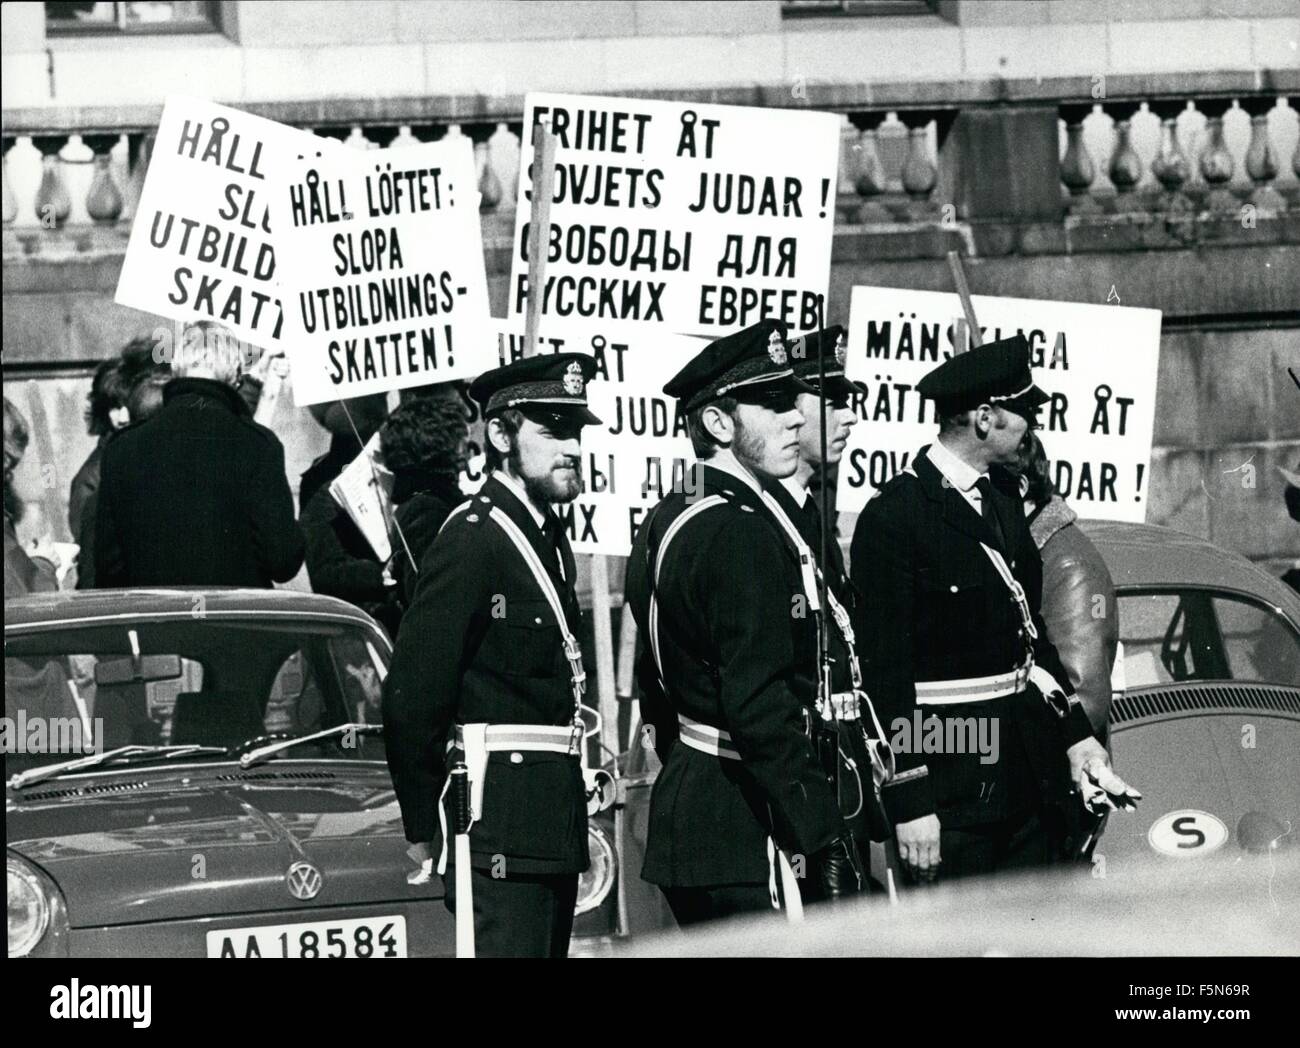 1972 - un piccolo gruppo di ebrei sono stati la dimostrazione contro la discriminazione sovietica degli ebrei che vivono in unione sovietica. ''La libertà per ebrei sovietici'', ''i diritti umani per ebrei sovietici'', entrambi in svedese e in russo sulla segnaletica. © Keystone Pictures USA/ZUMAPRESS.com/Alamy Live News Foto Stock